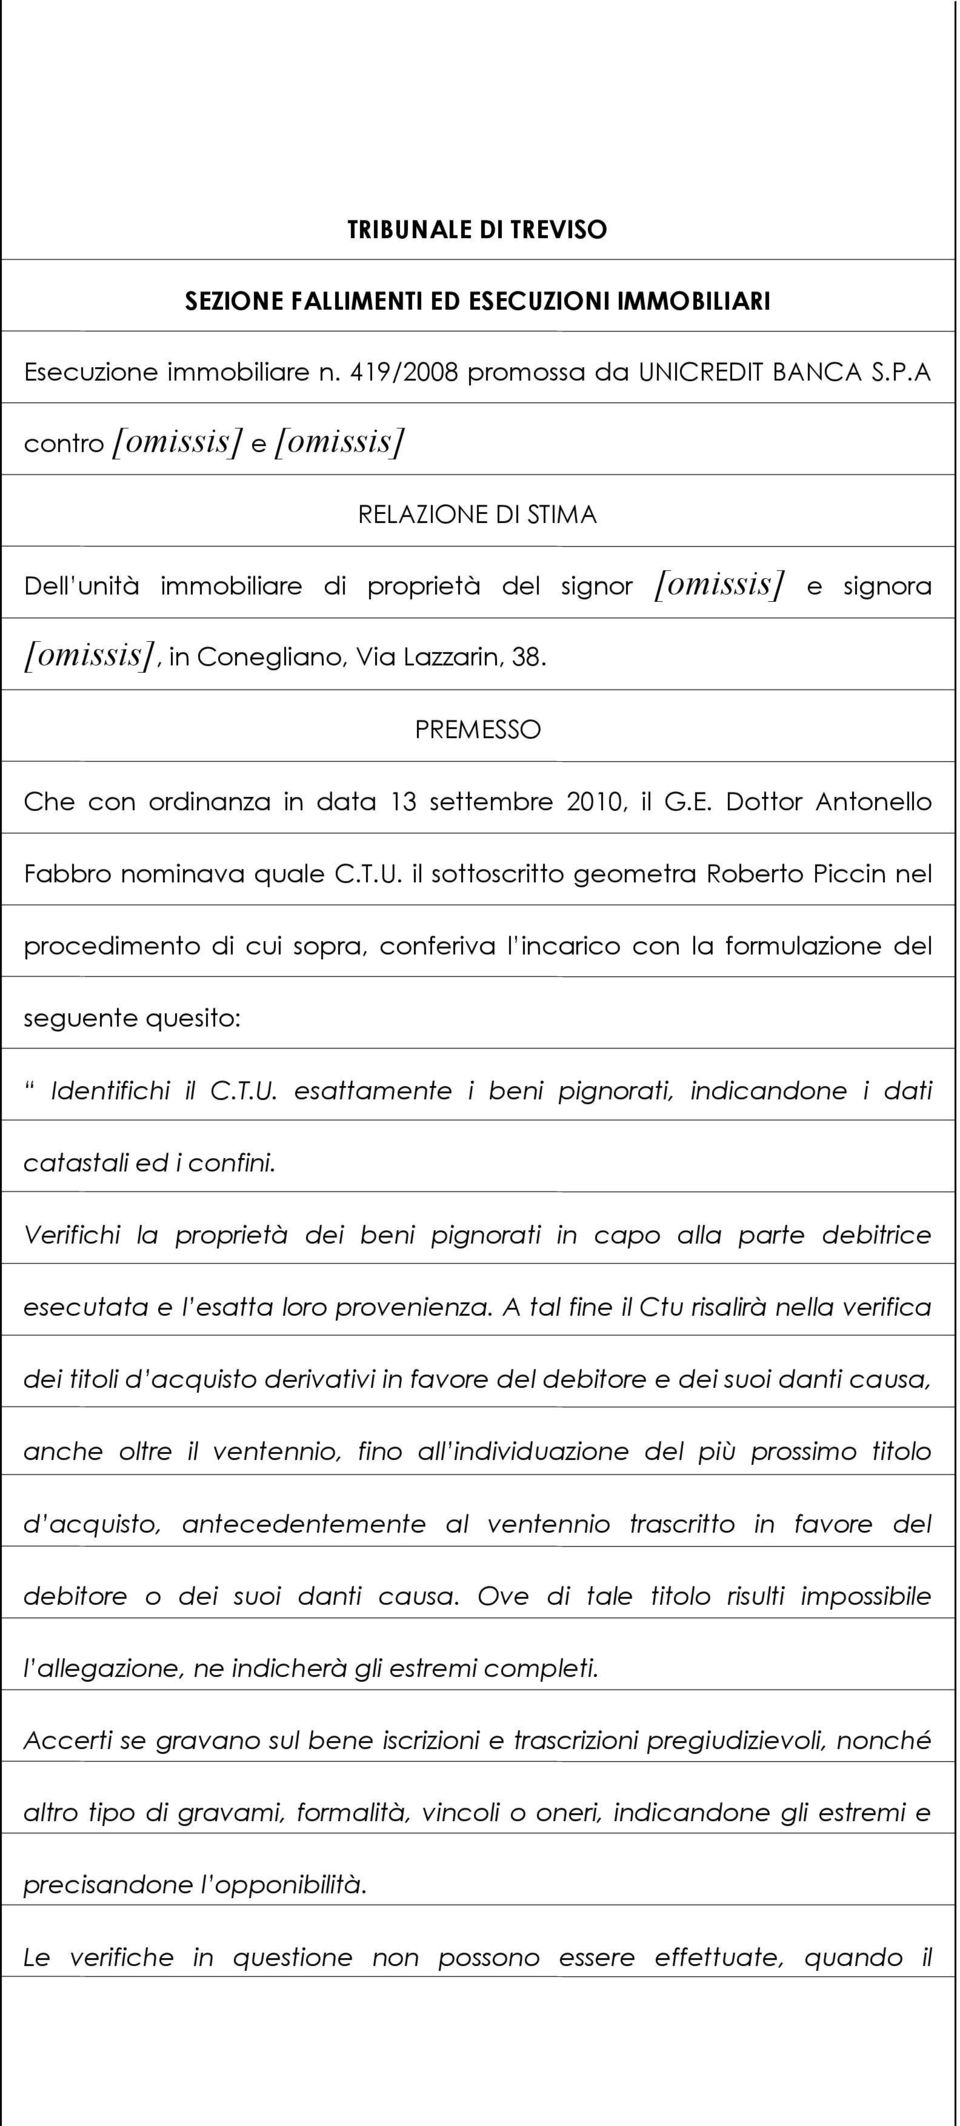 PREMESSO Che con ordinanza in data 13 settembre 2010, il G.E. Dottor Antonello Fabbro nominava quale C.T.U.